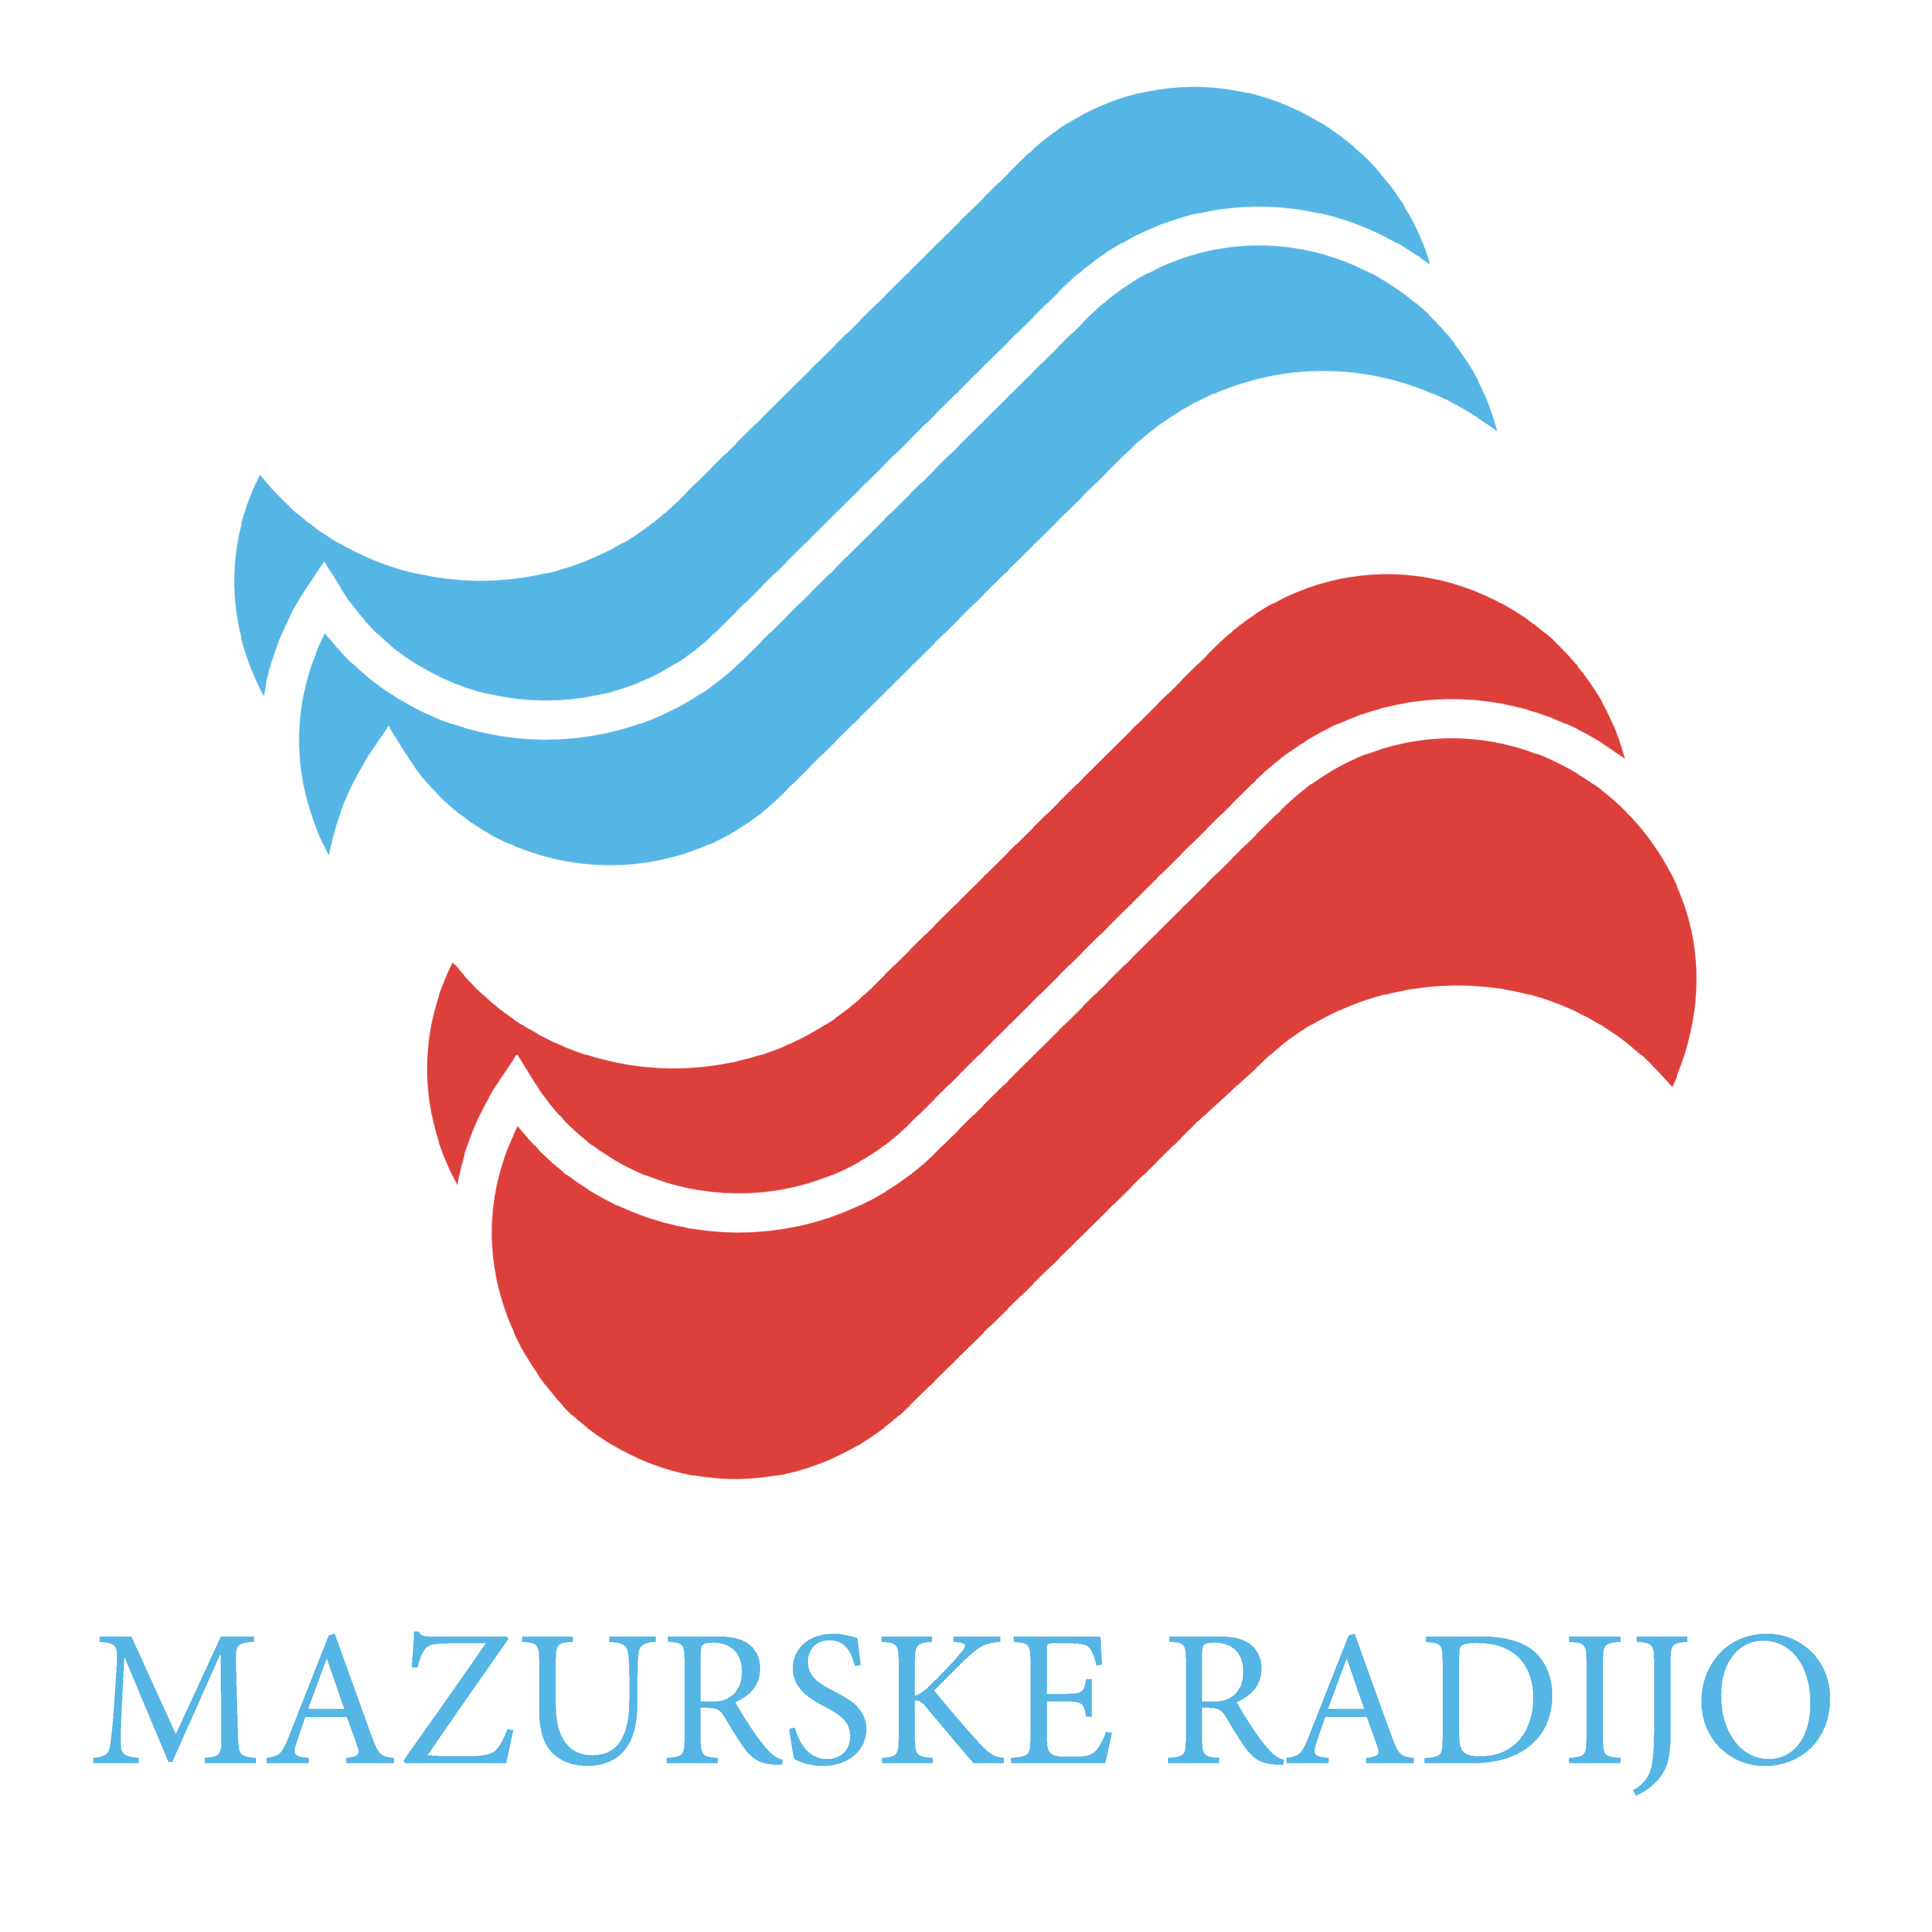 Mazurskie Radio (Mazurske Radijo)